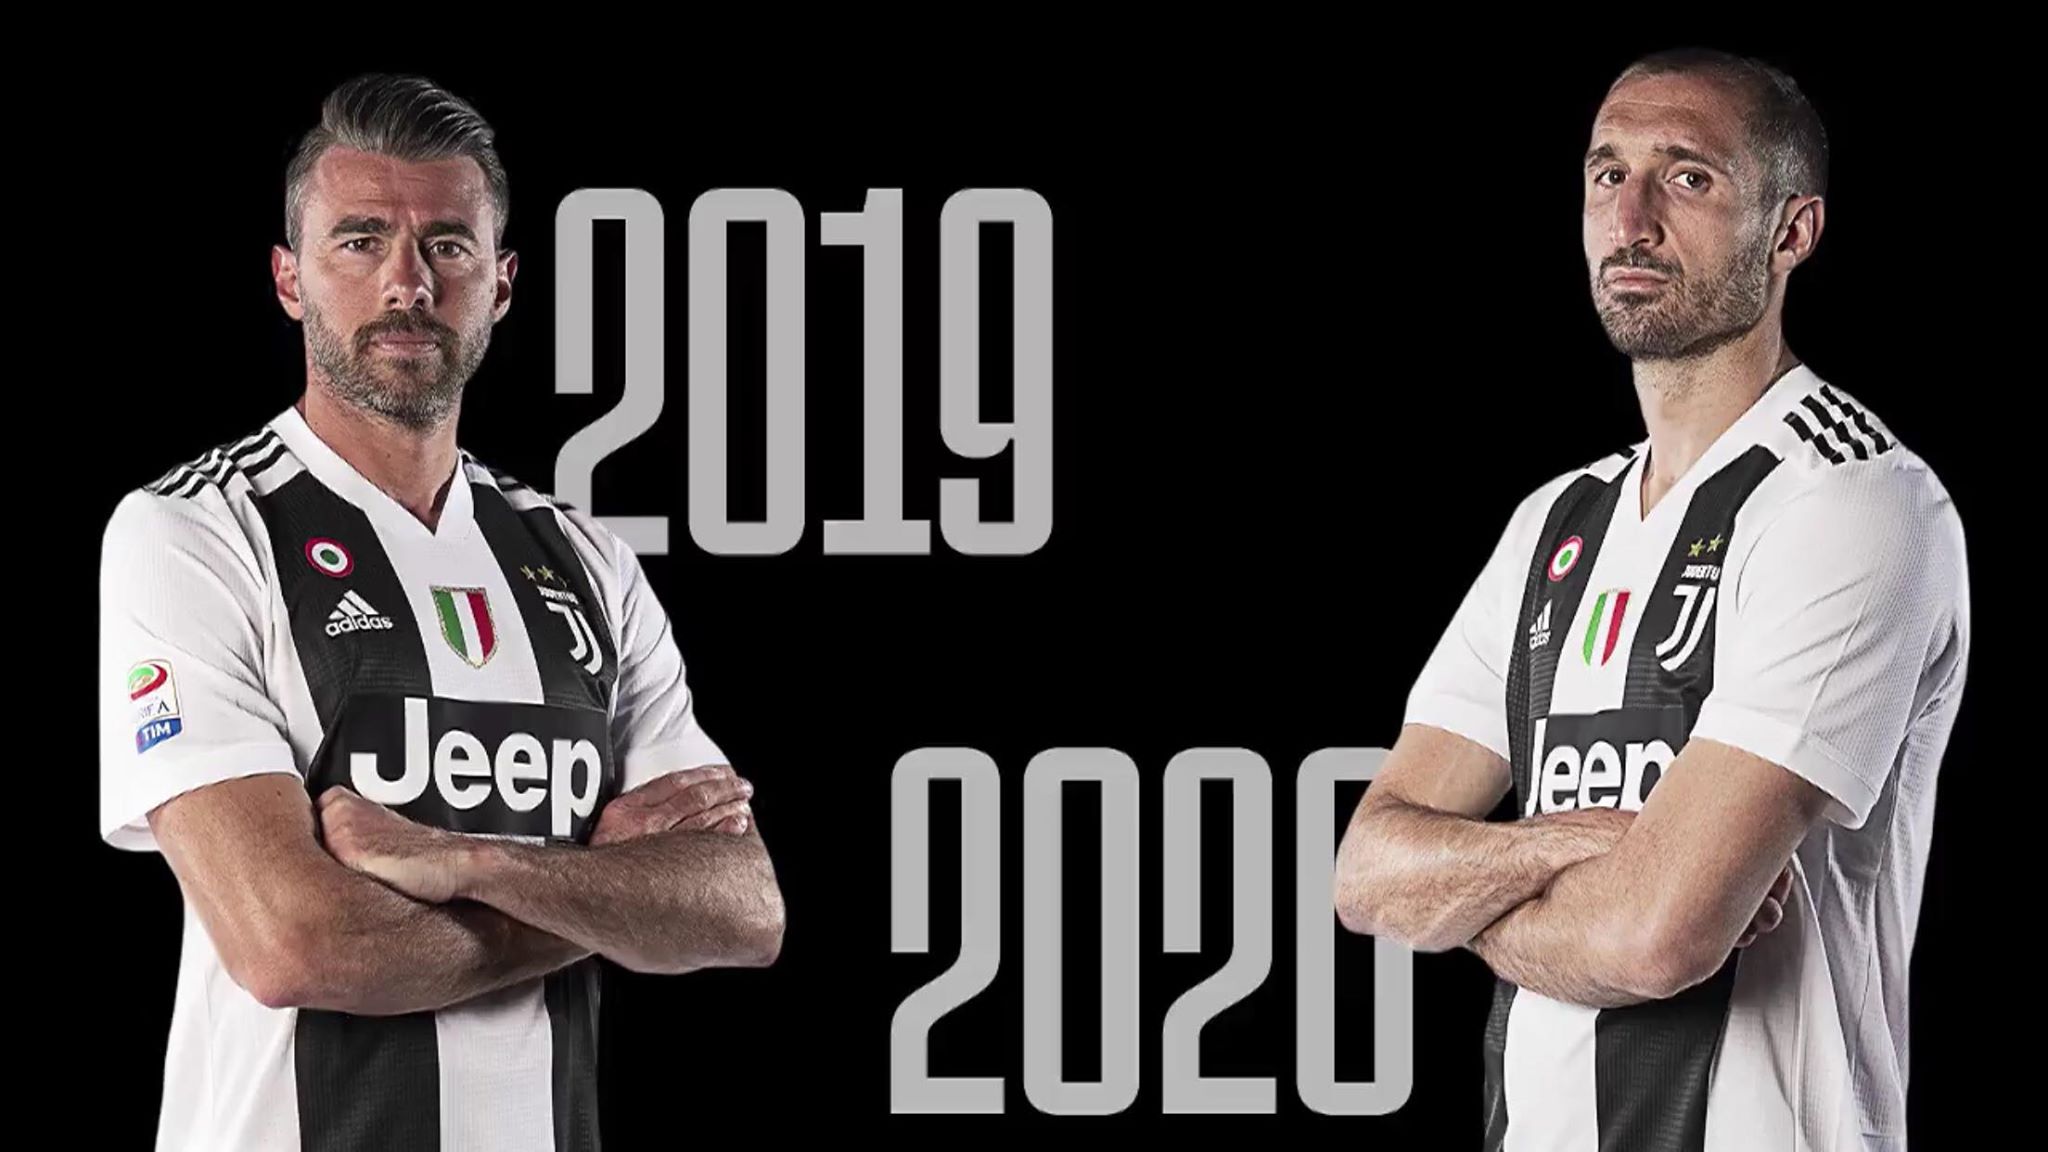 CHÍNH THỨC: Chiellini và Barzagli gia hạn hợp đồng với Juventus - Bóng Đá